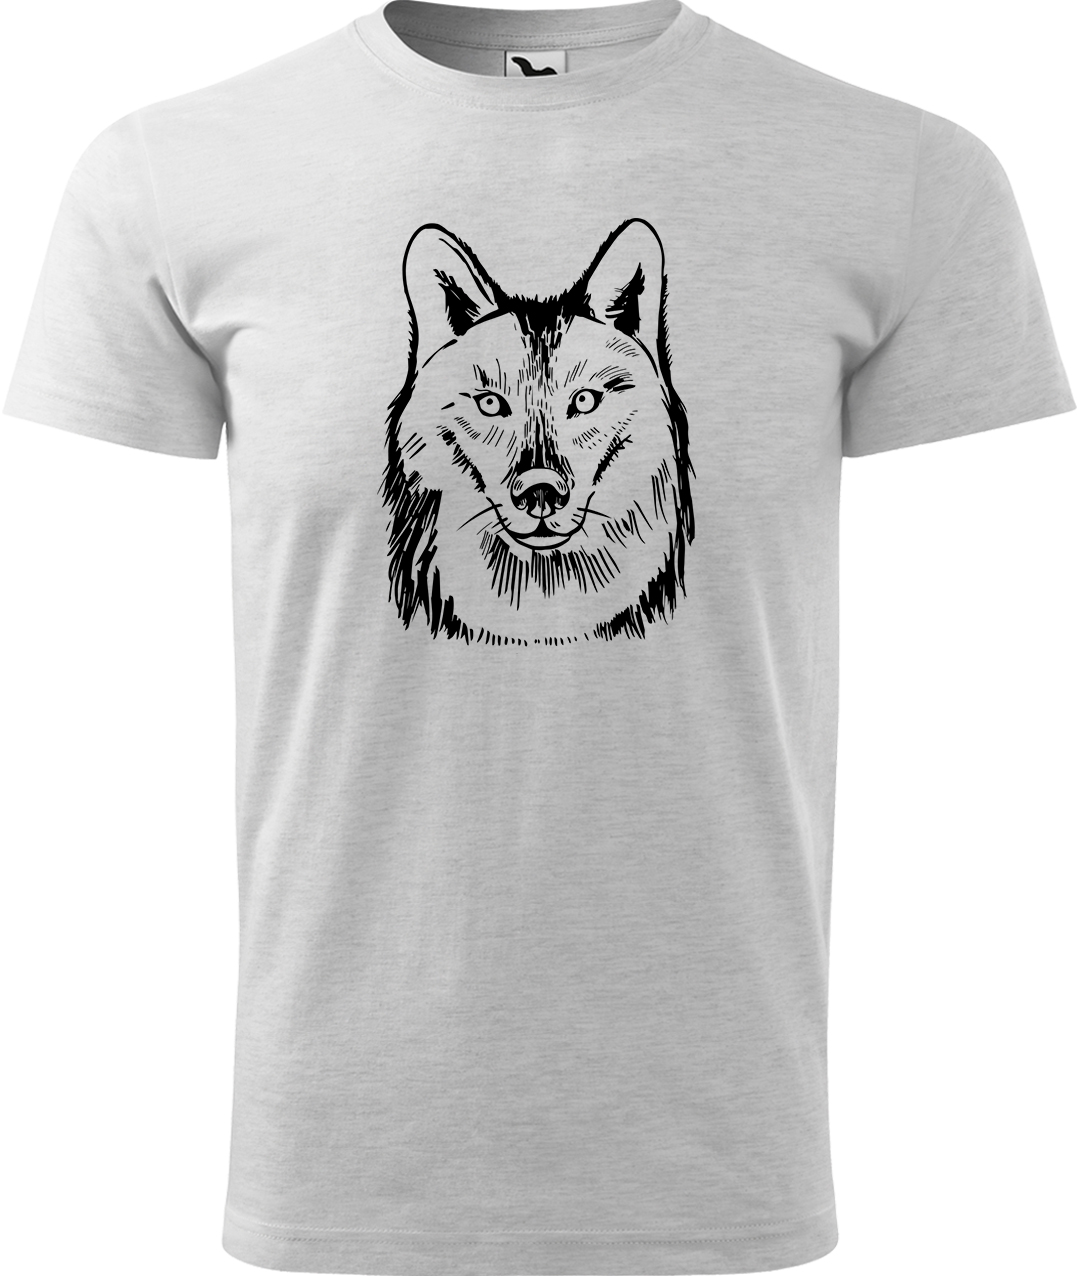 Pánské tričko s vlkem - Kresba vlka Velikost: 3XL, Barva: Světle šedý melír (03), Střih: pánský